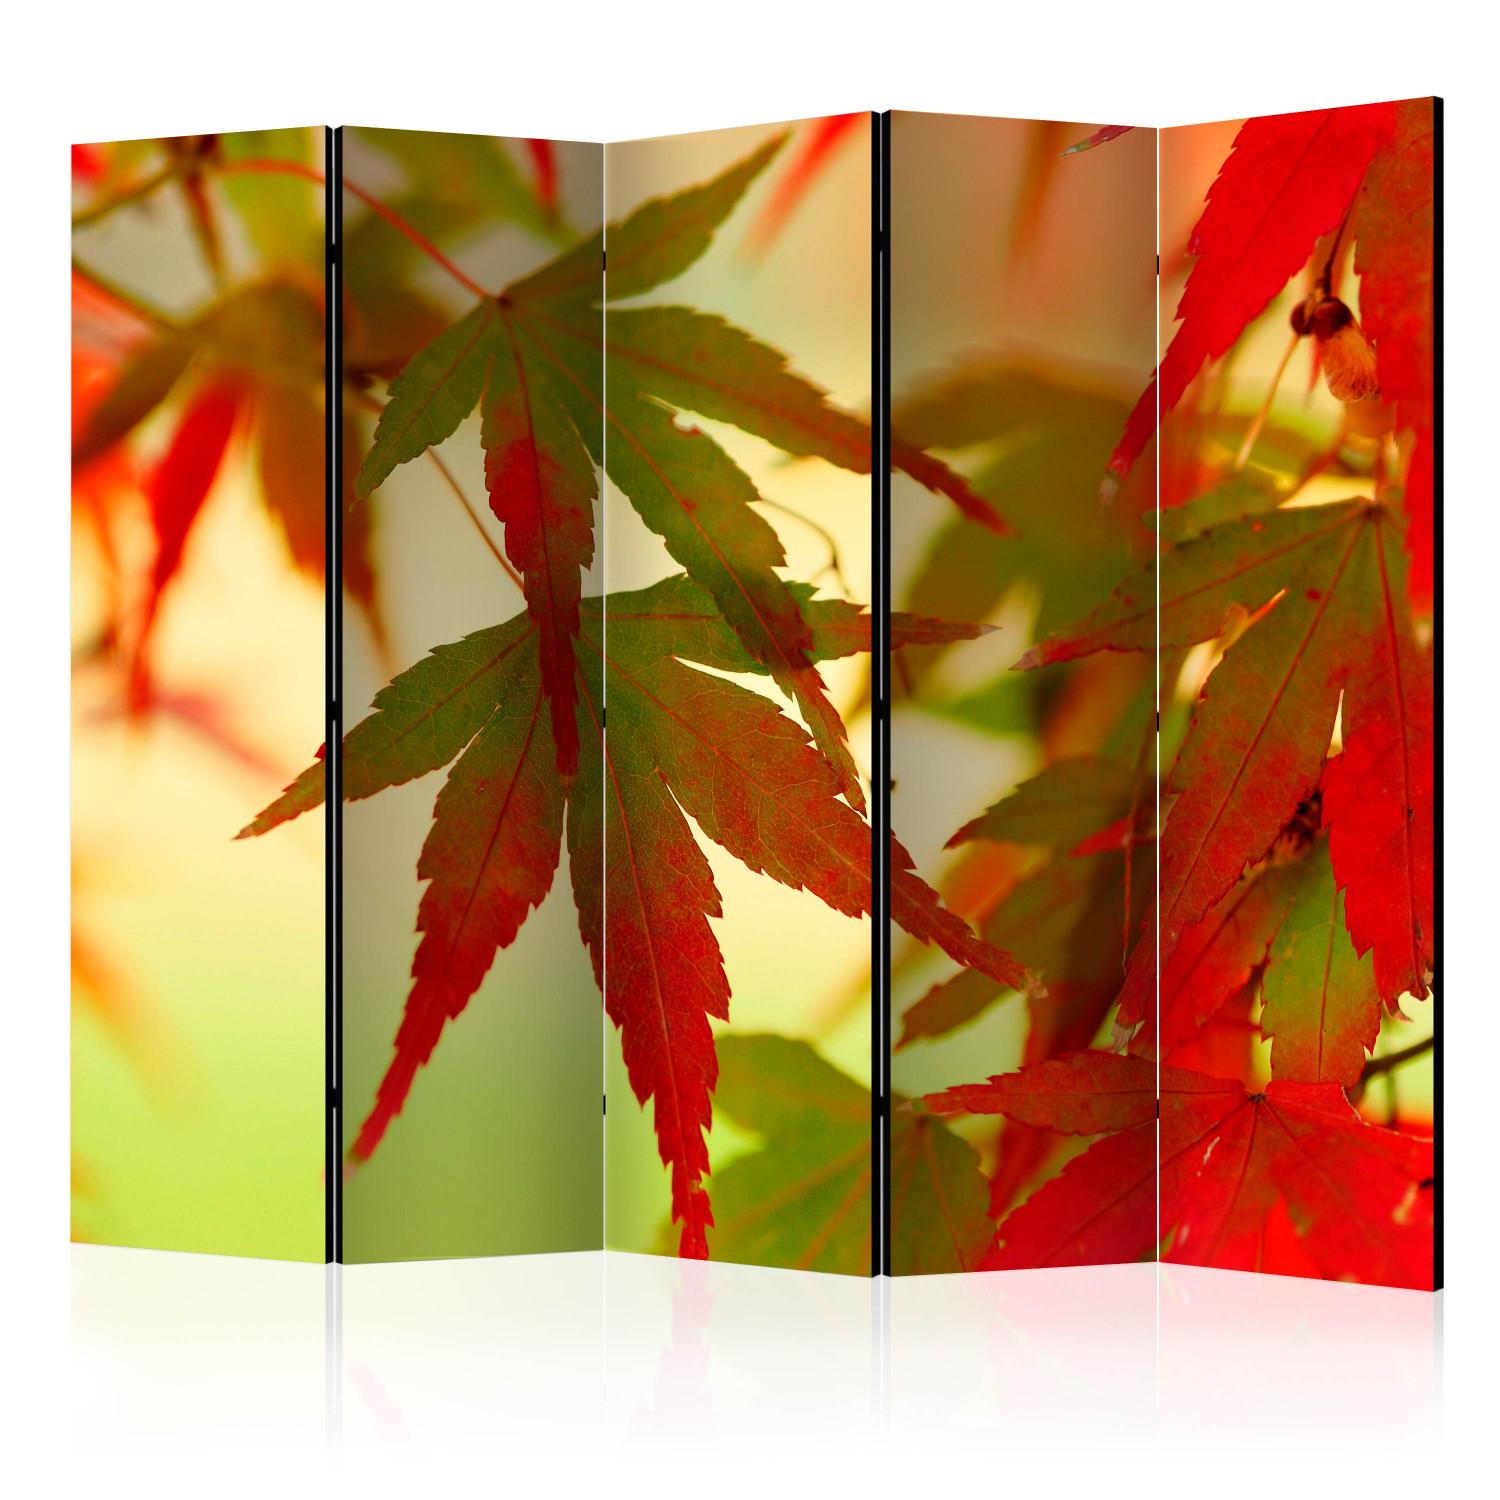 Biombo decorativo Hojas Coloridas II - Árbol con hojas rojas y verdes sobre fondo claro